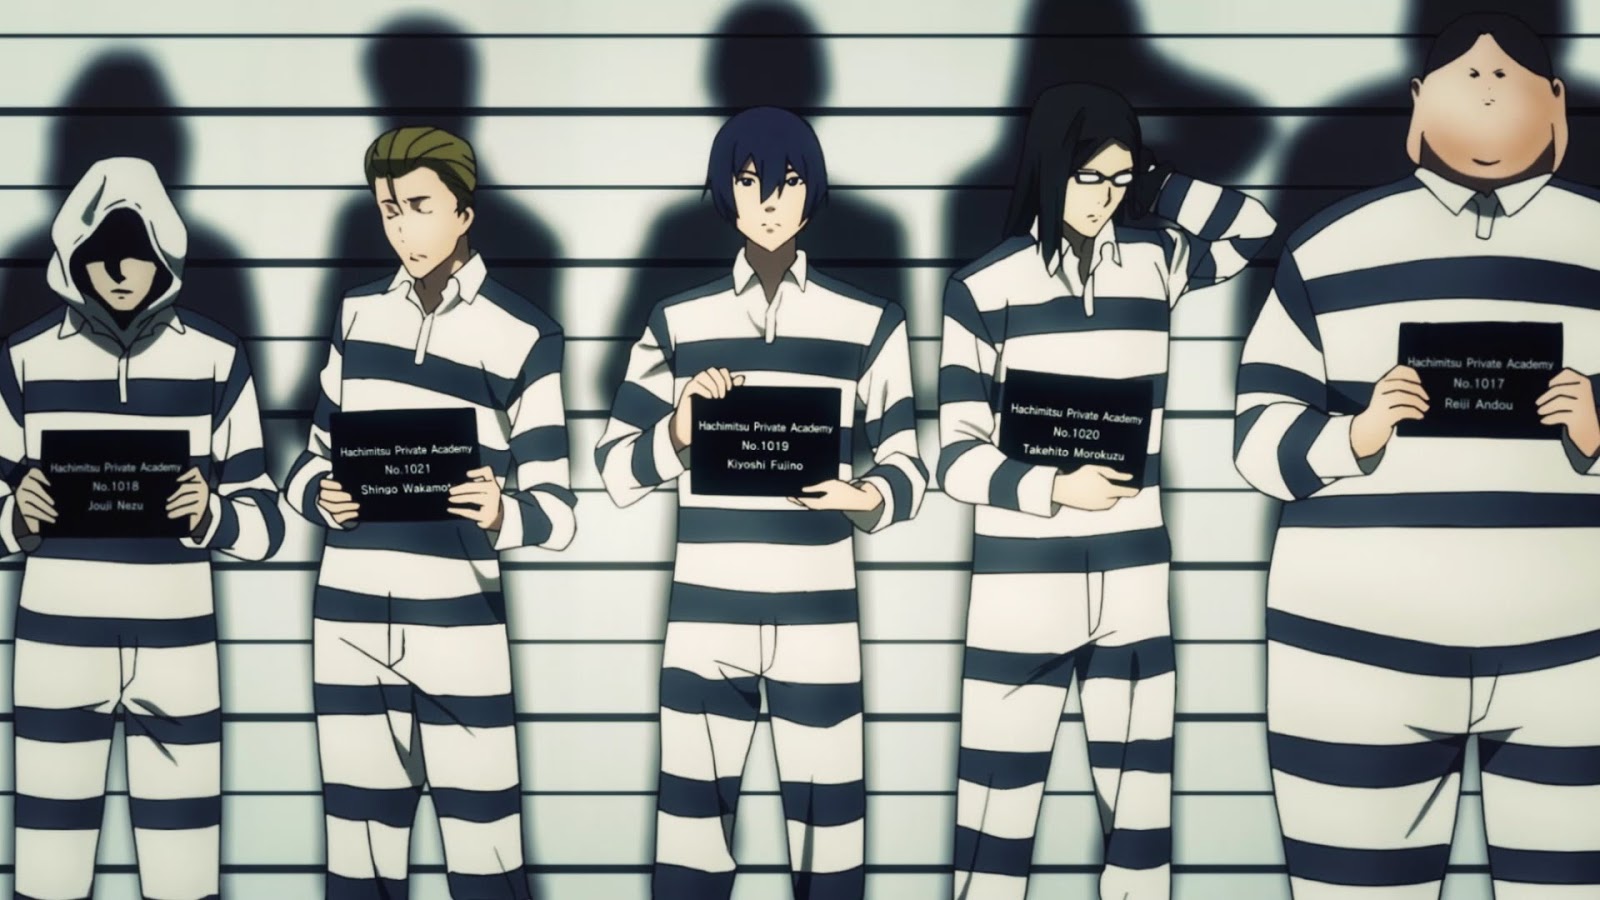 Noobz Prison School Anime Ganha V Deo Promocional Em Ingl S